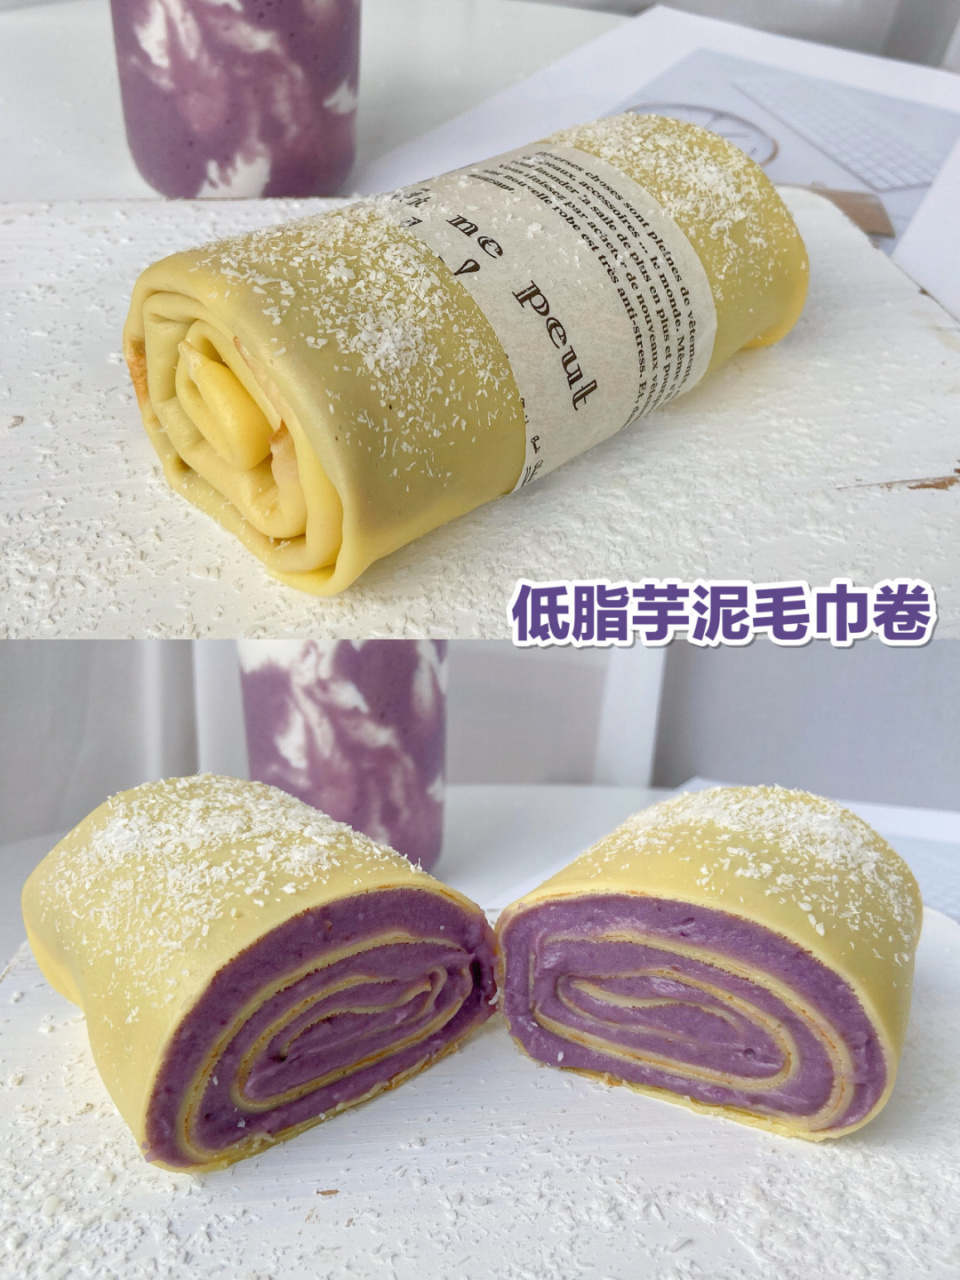 带你们吃减脂的甜品毛巾卷[期待 芋头300g,紫薯120g,脱脂牛奶200g